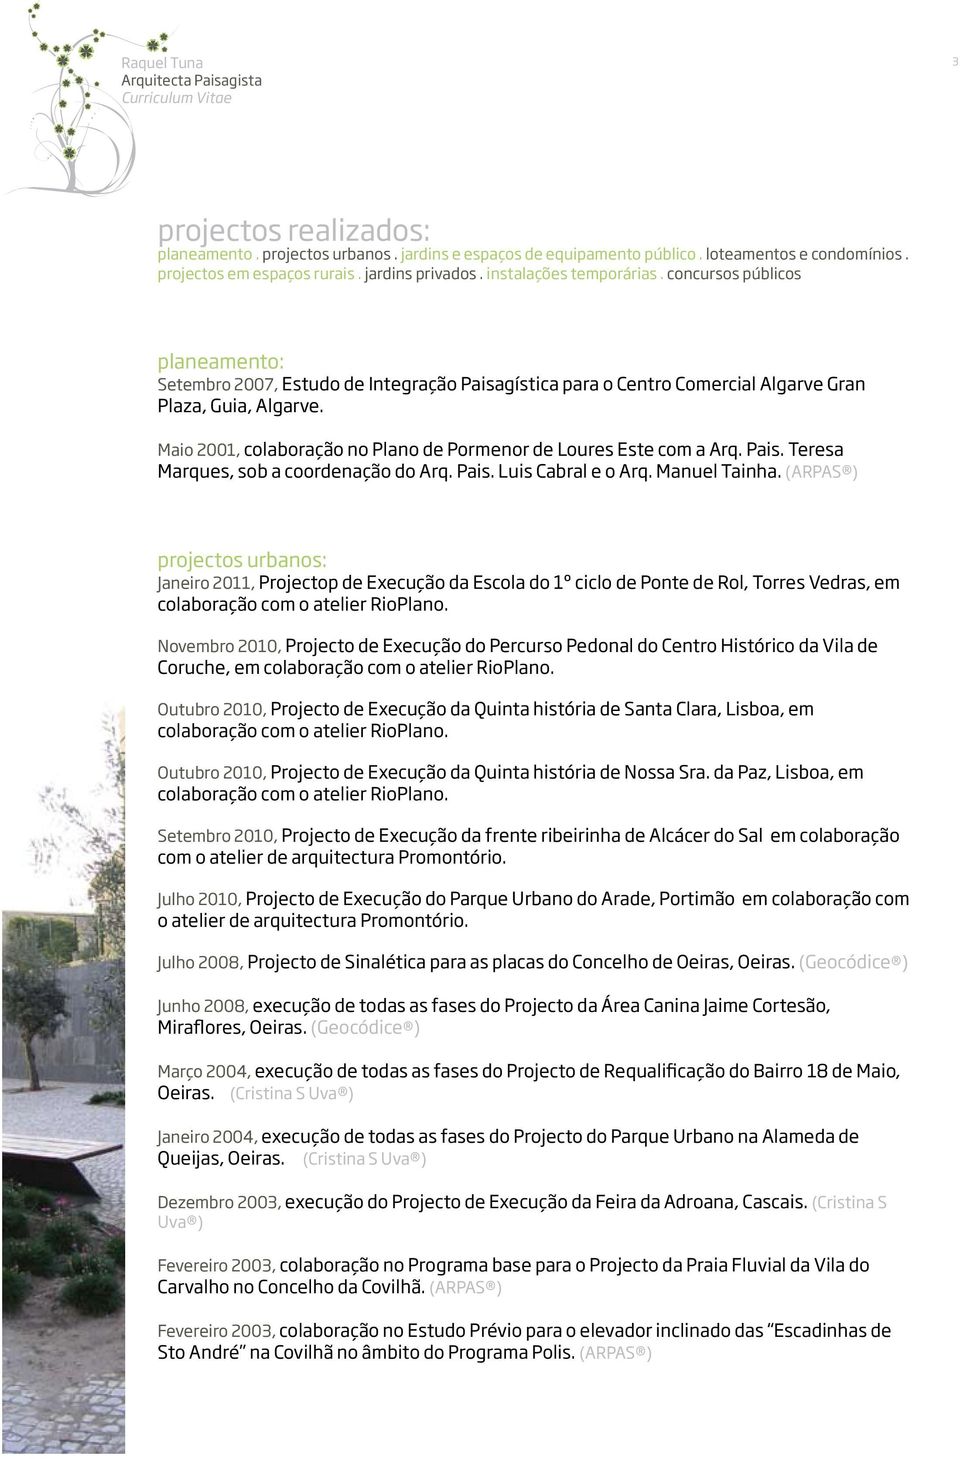 Maio 2001, colaboração no Plano de Pormenor de Loures Este com a Arq. Pais. Teresa Marques, sob a coordenação do Arq. Pais. Luis Cabral e o Arq. Manuel Tainha.